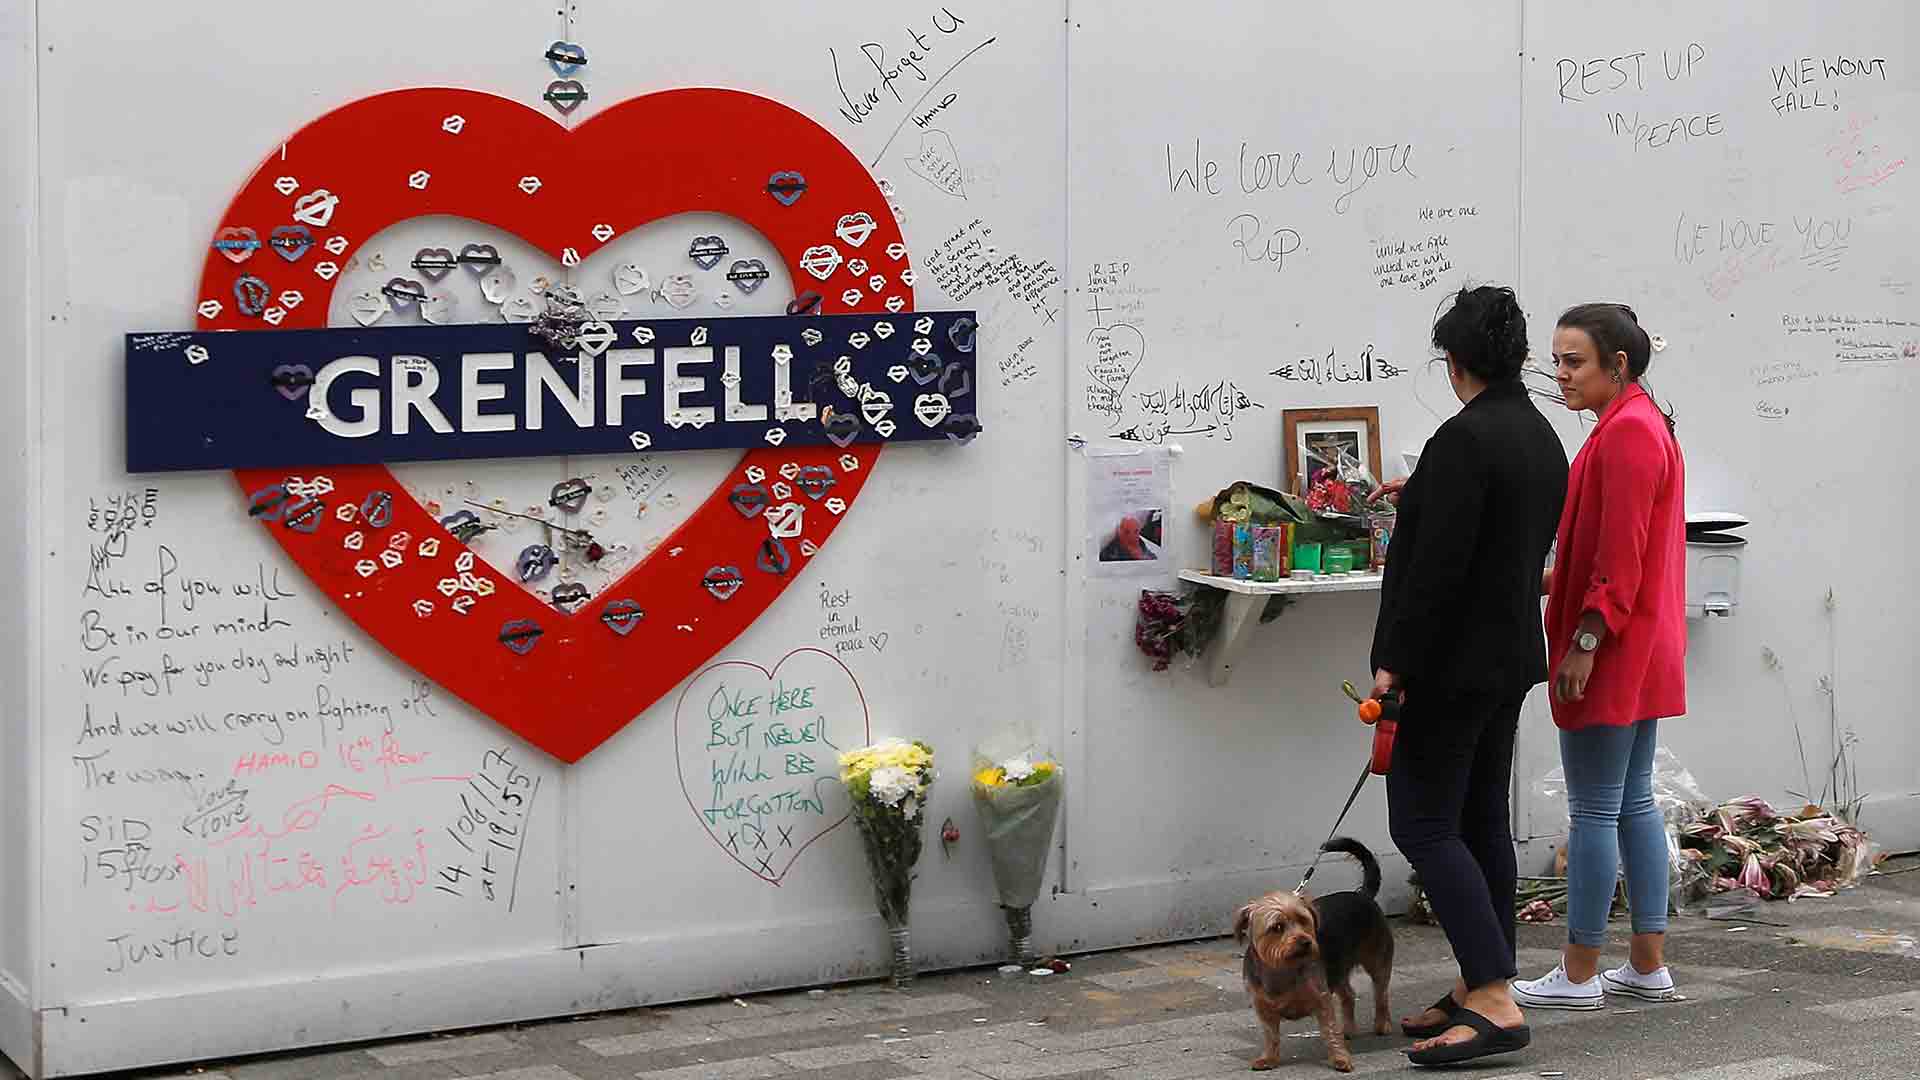 Londres recuerda a las víctimas de la Torre Grenfell en un clima de indignación